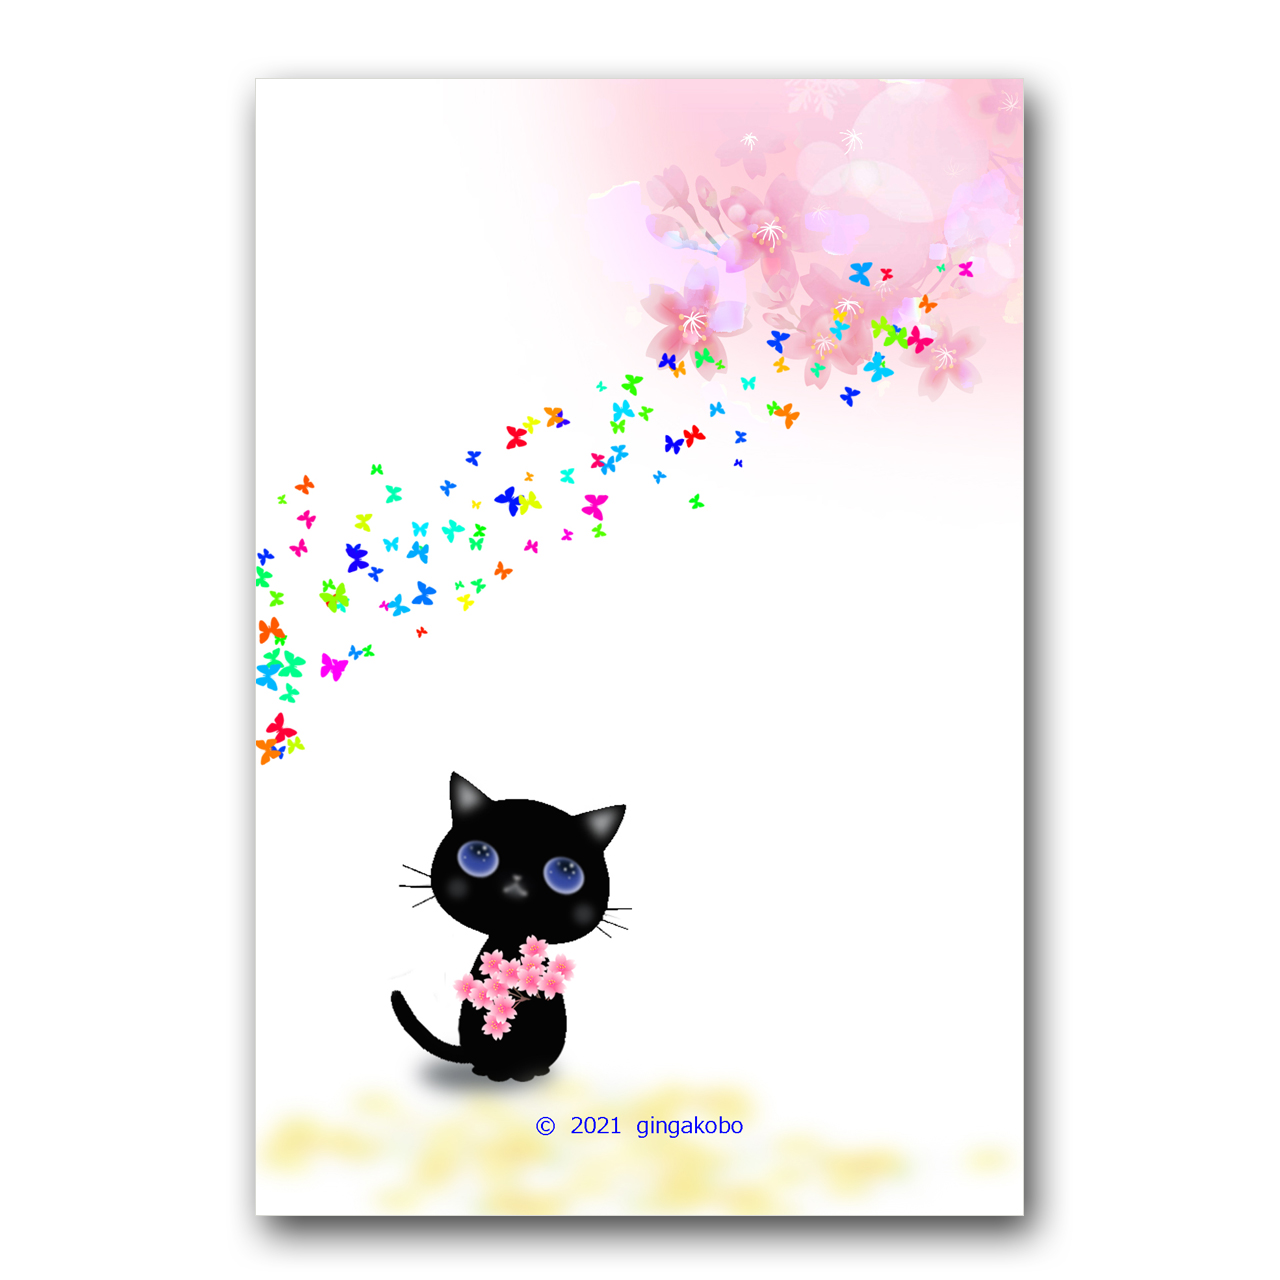 春 来たよー 猫 桜 蝶々 ほっこり癒しのイラストポストカード2枚組 No 12 Iichi ハンドメイド クラフト作品 手仕事品の通販